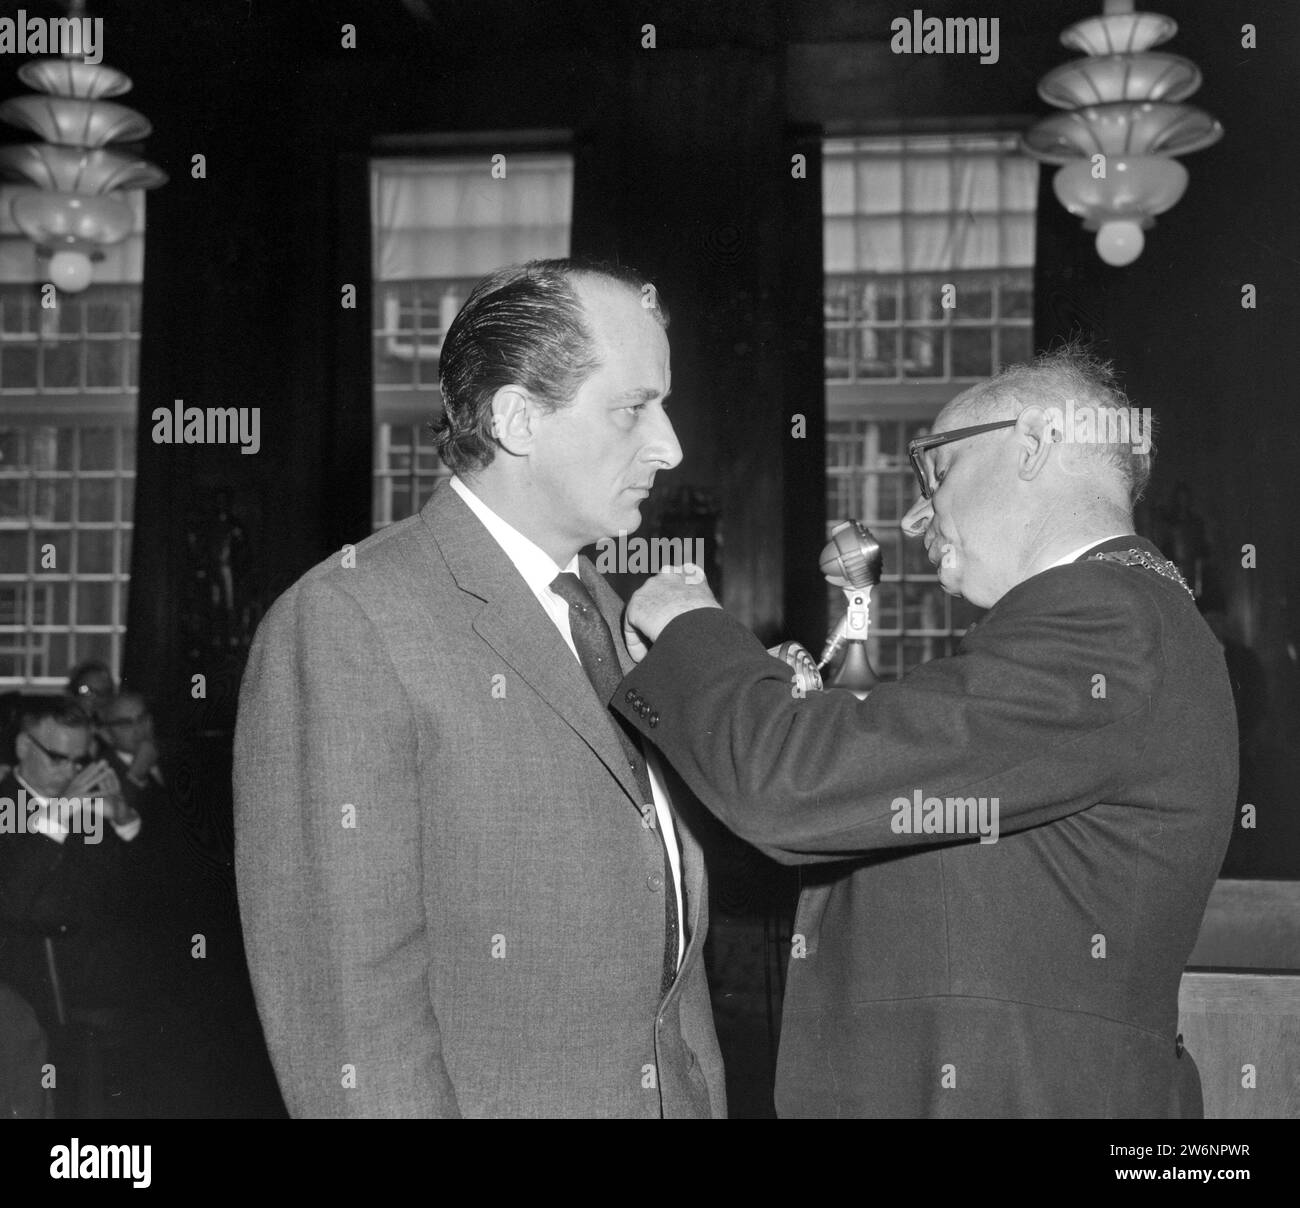 Der stellvertretende Bürgermeister Van Wijk verleiht den Preis an A. C. M. Hermus CA. April 1964 Stockfoto